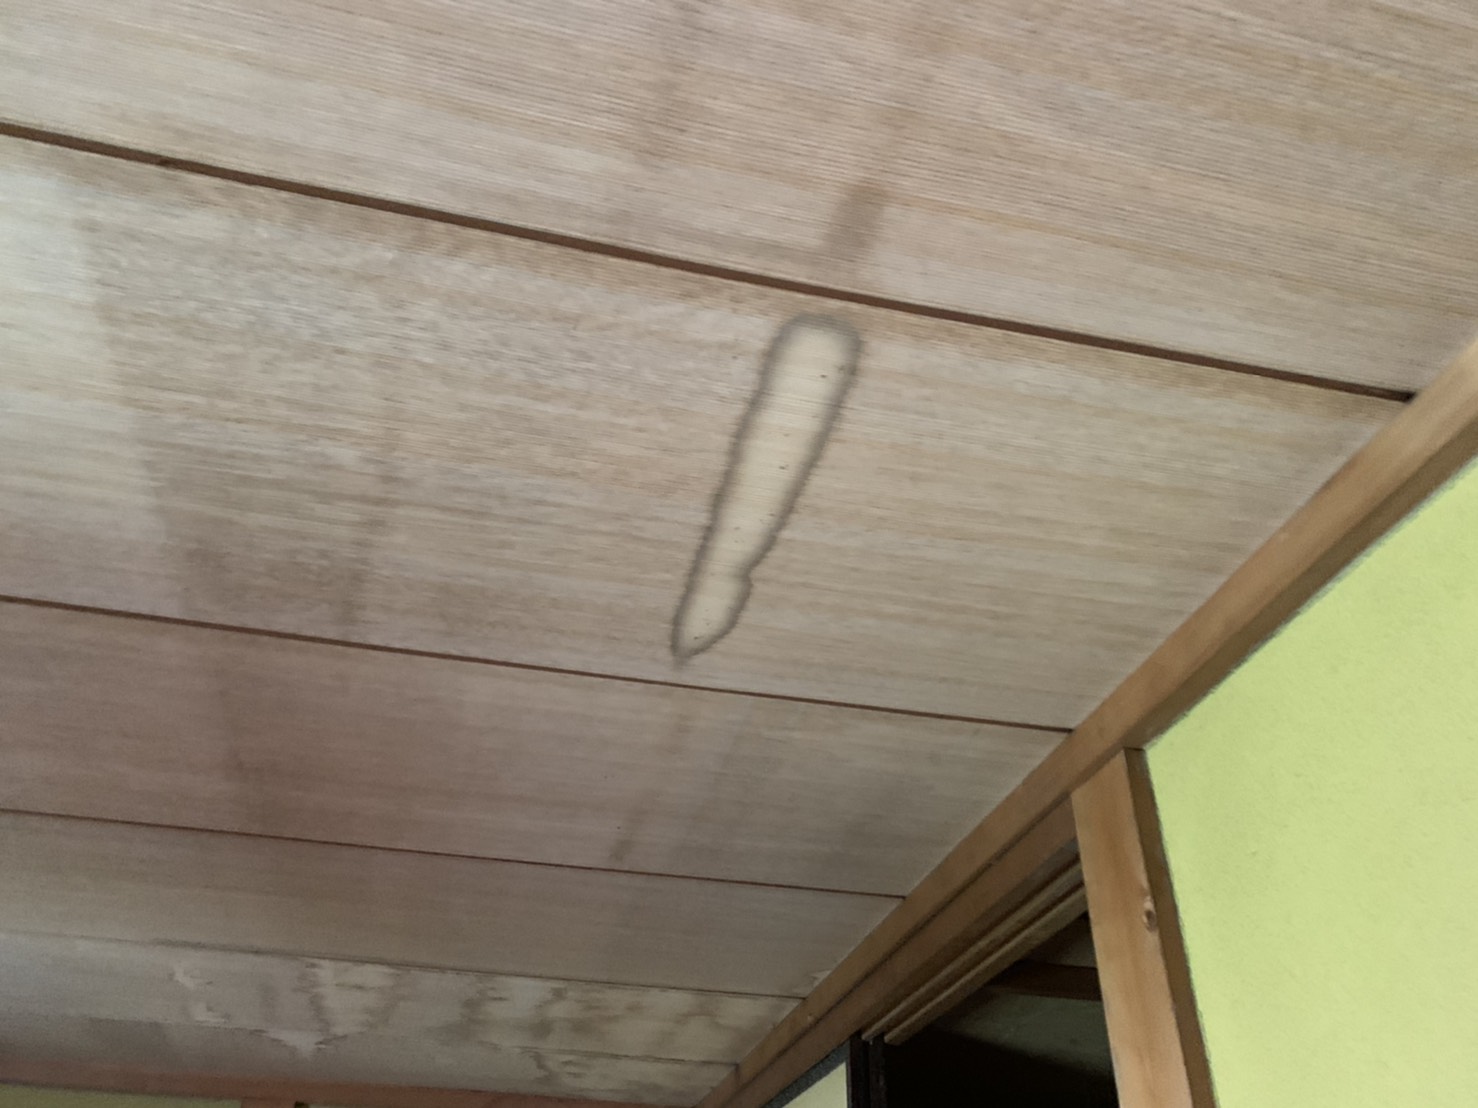 桑名市の瓦から雨漏れ天井板の状況UP